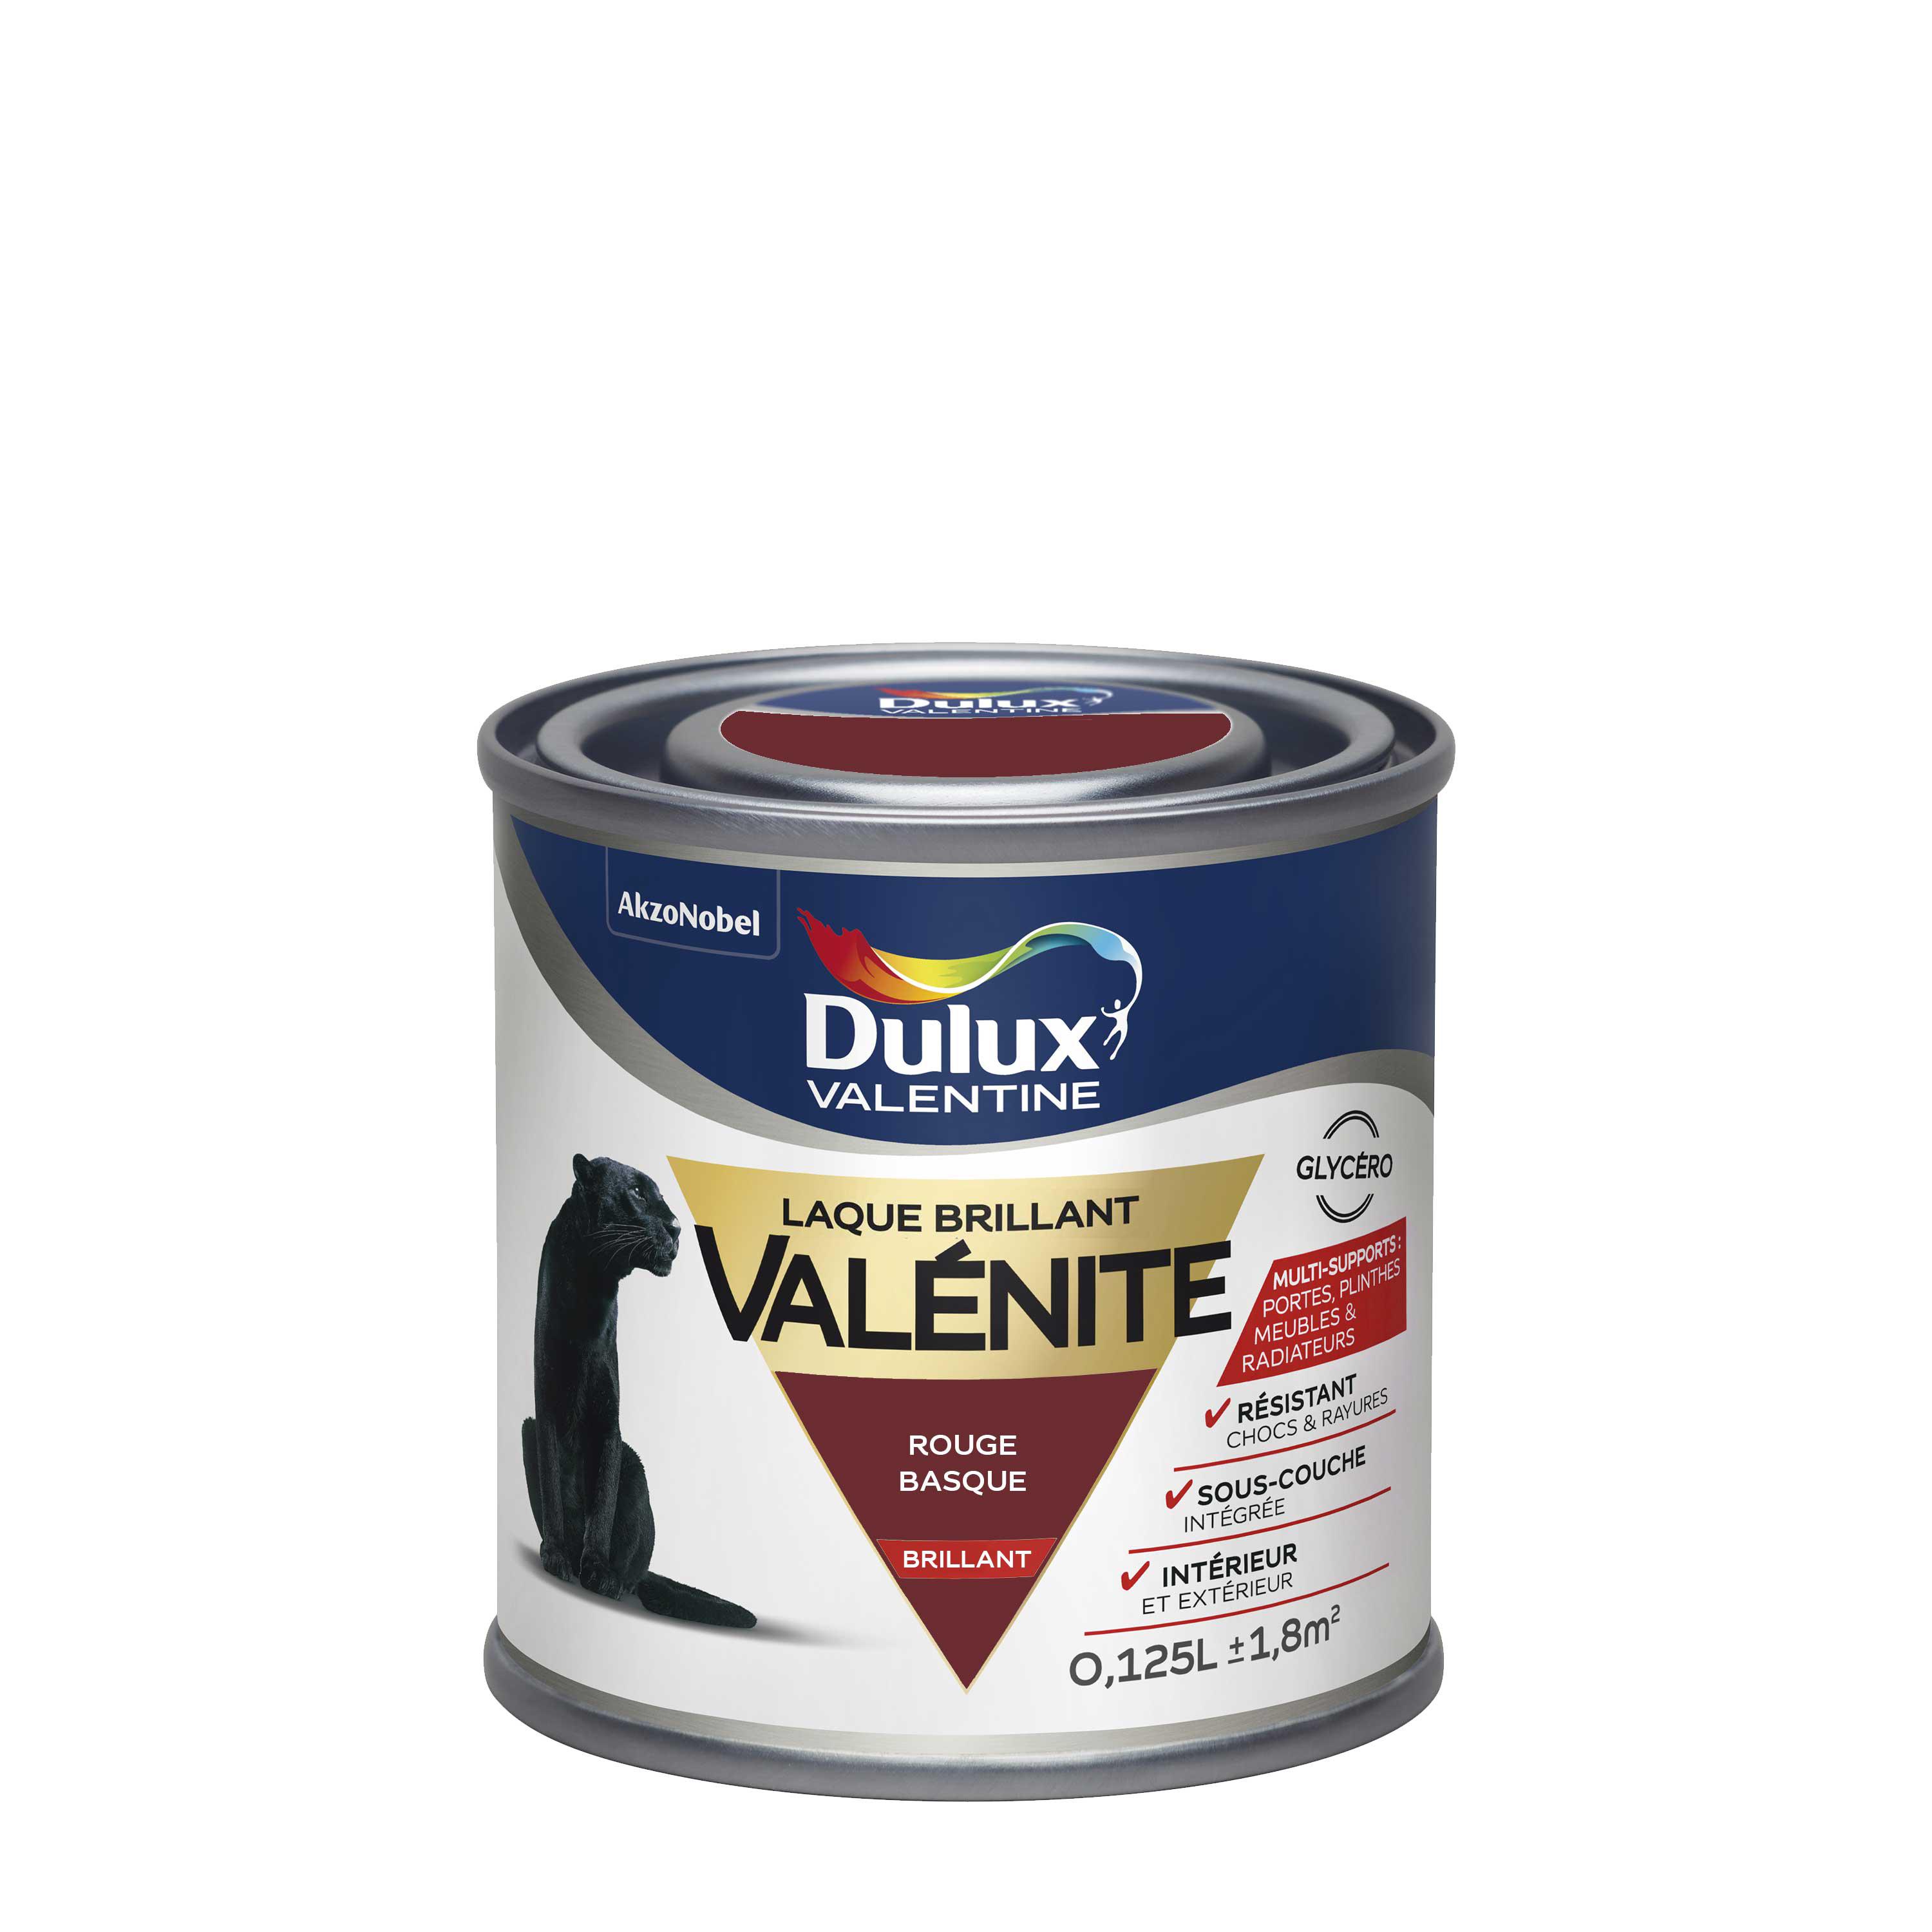 Peinture Laque Valénite Dulux Valentine Brillant Rouge Basque 0,125 L